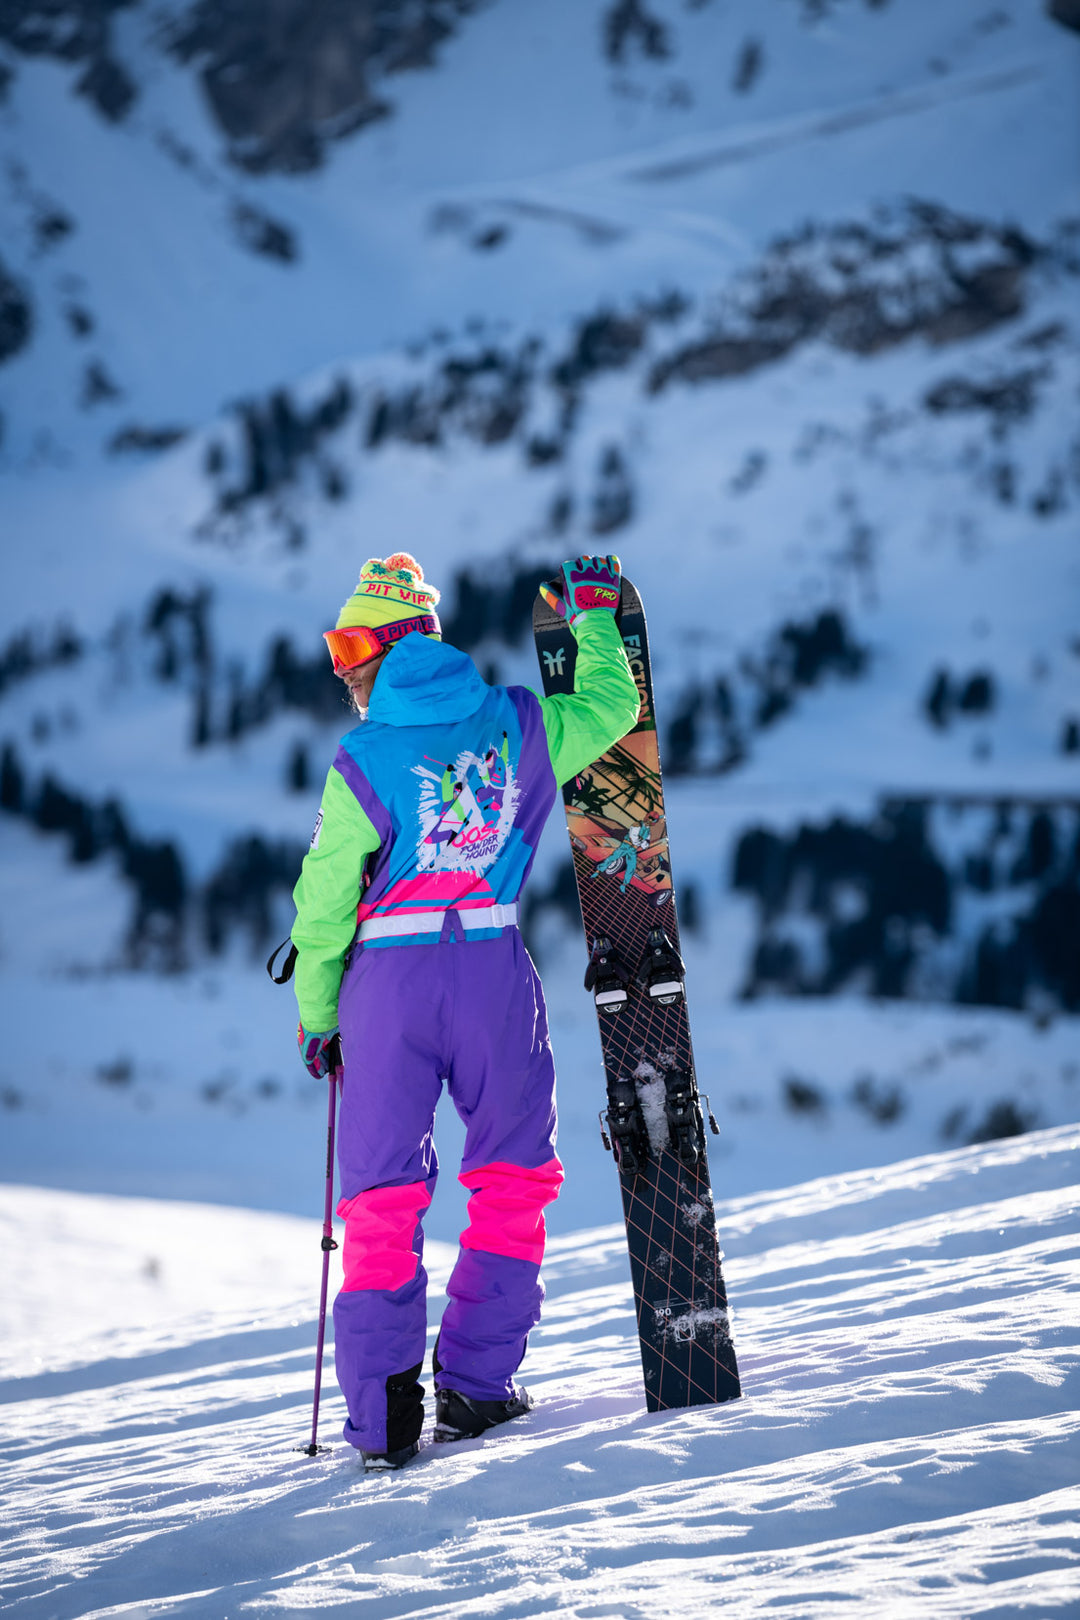 Powder Hound Ski Suit - Men's